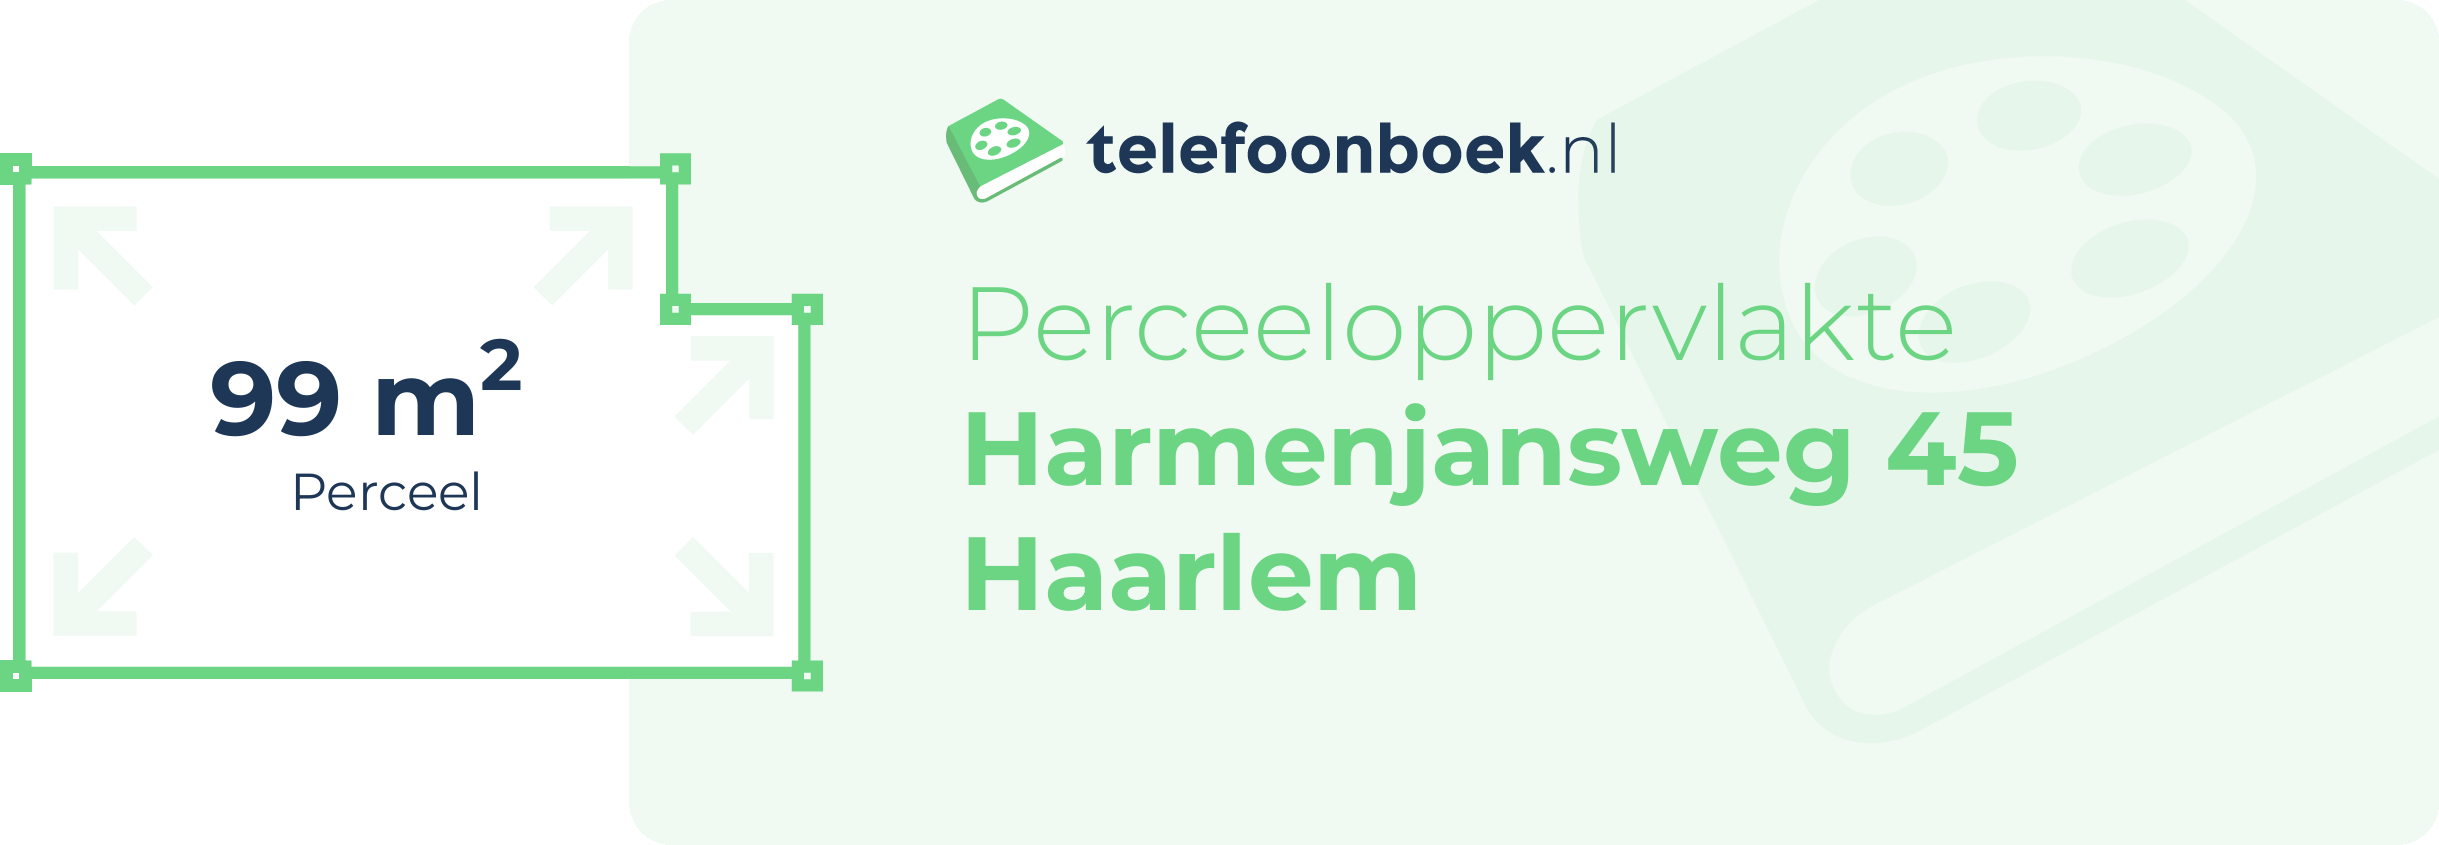 Perceeloppervlakte Harmenjansweg 45 Haarlem